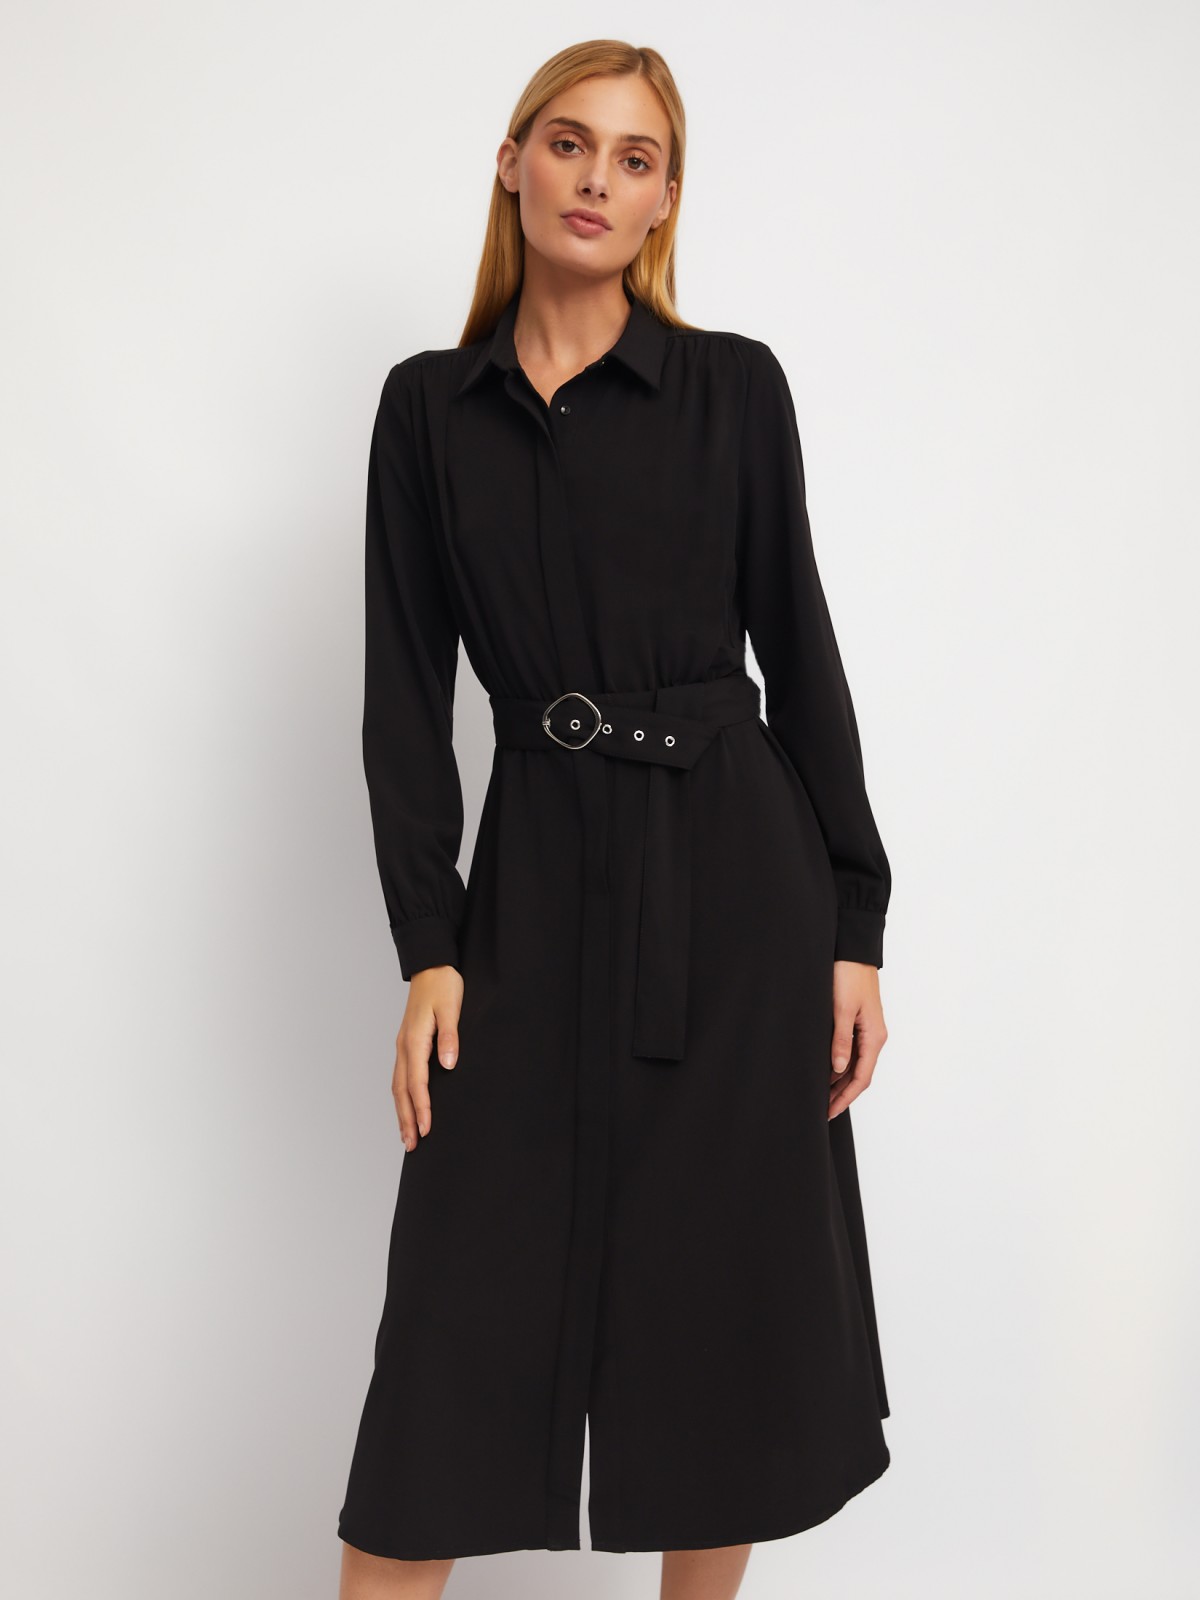 Платье-рубашка длины миди с воротником и акцентном на талии zolla 024118208223, цвет черный, размер XS - фото 1